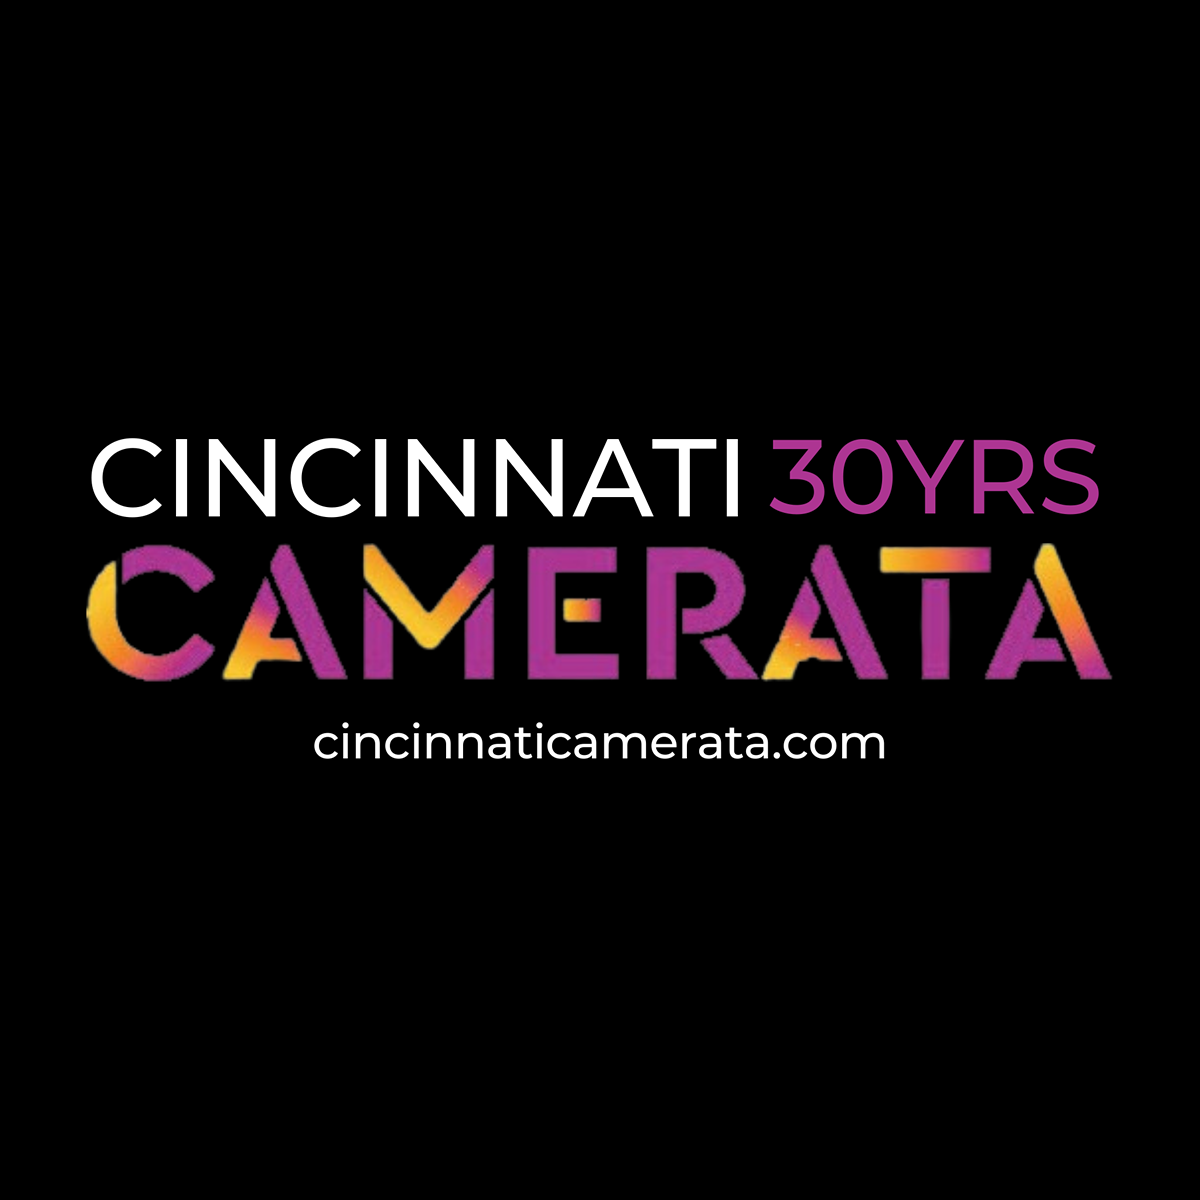 Cincinnati Camerata 30th Anniversary